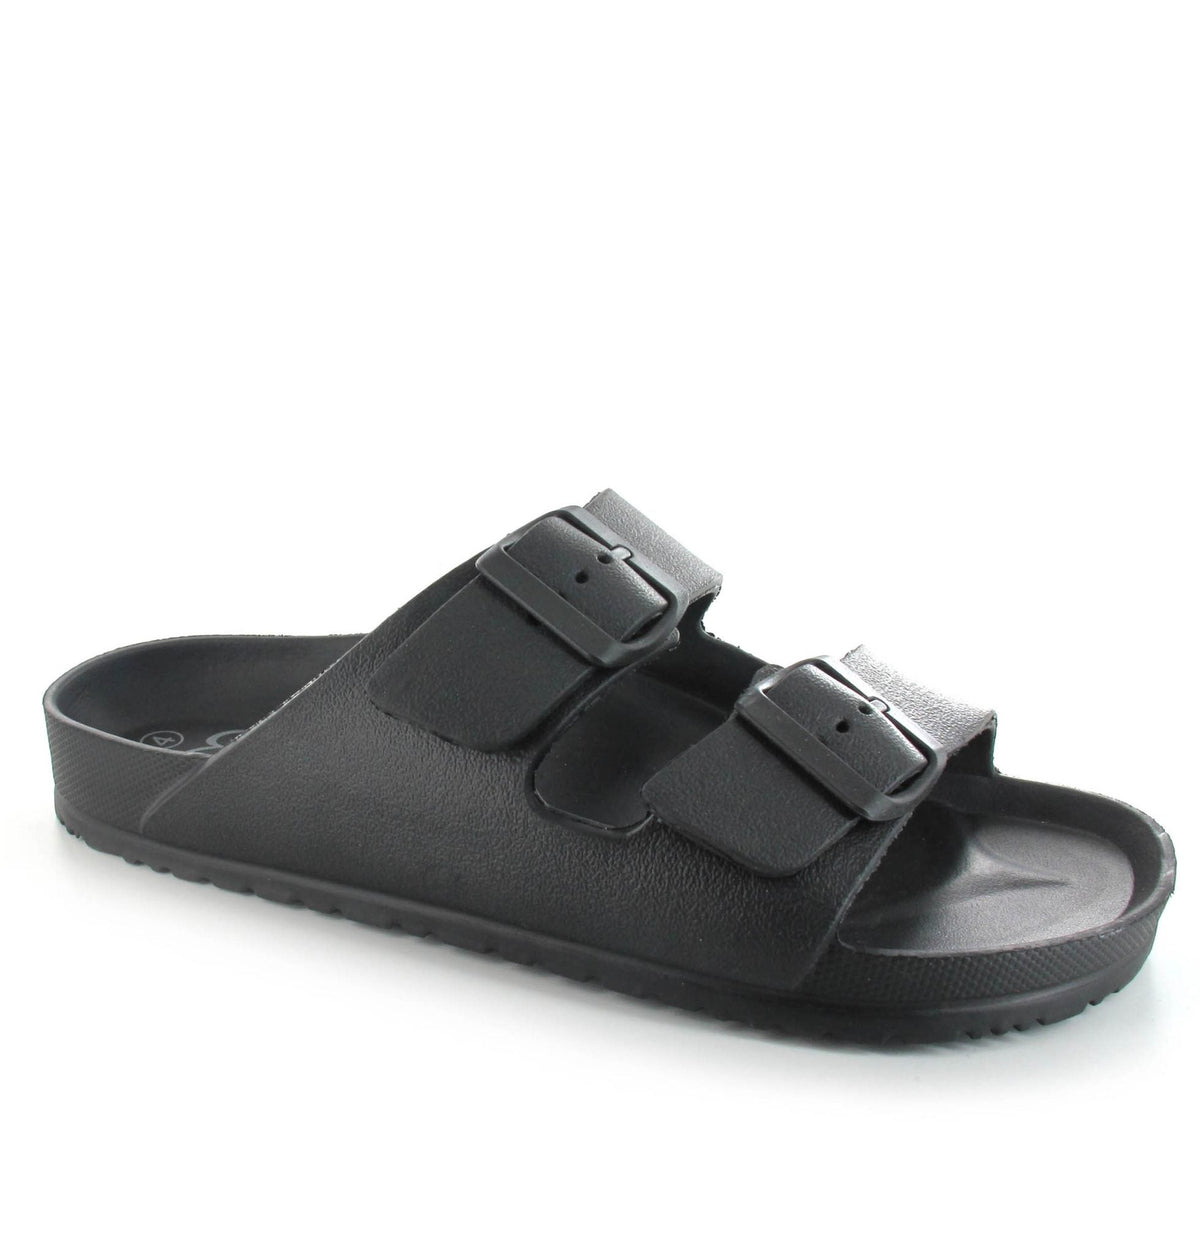 Black Shell Sandals - bestacaiberryselect